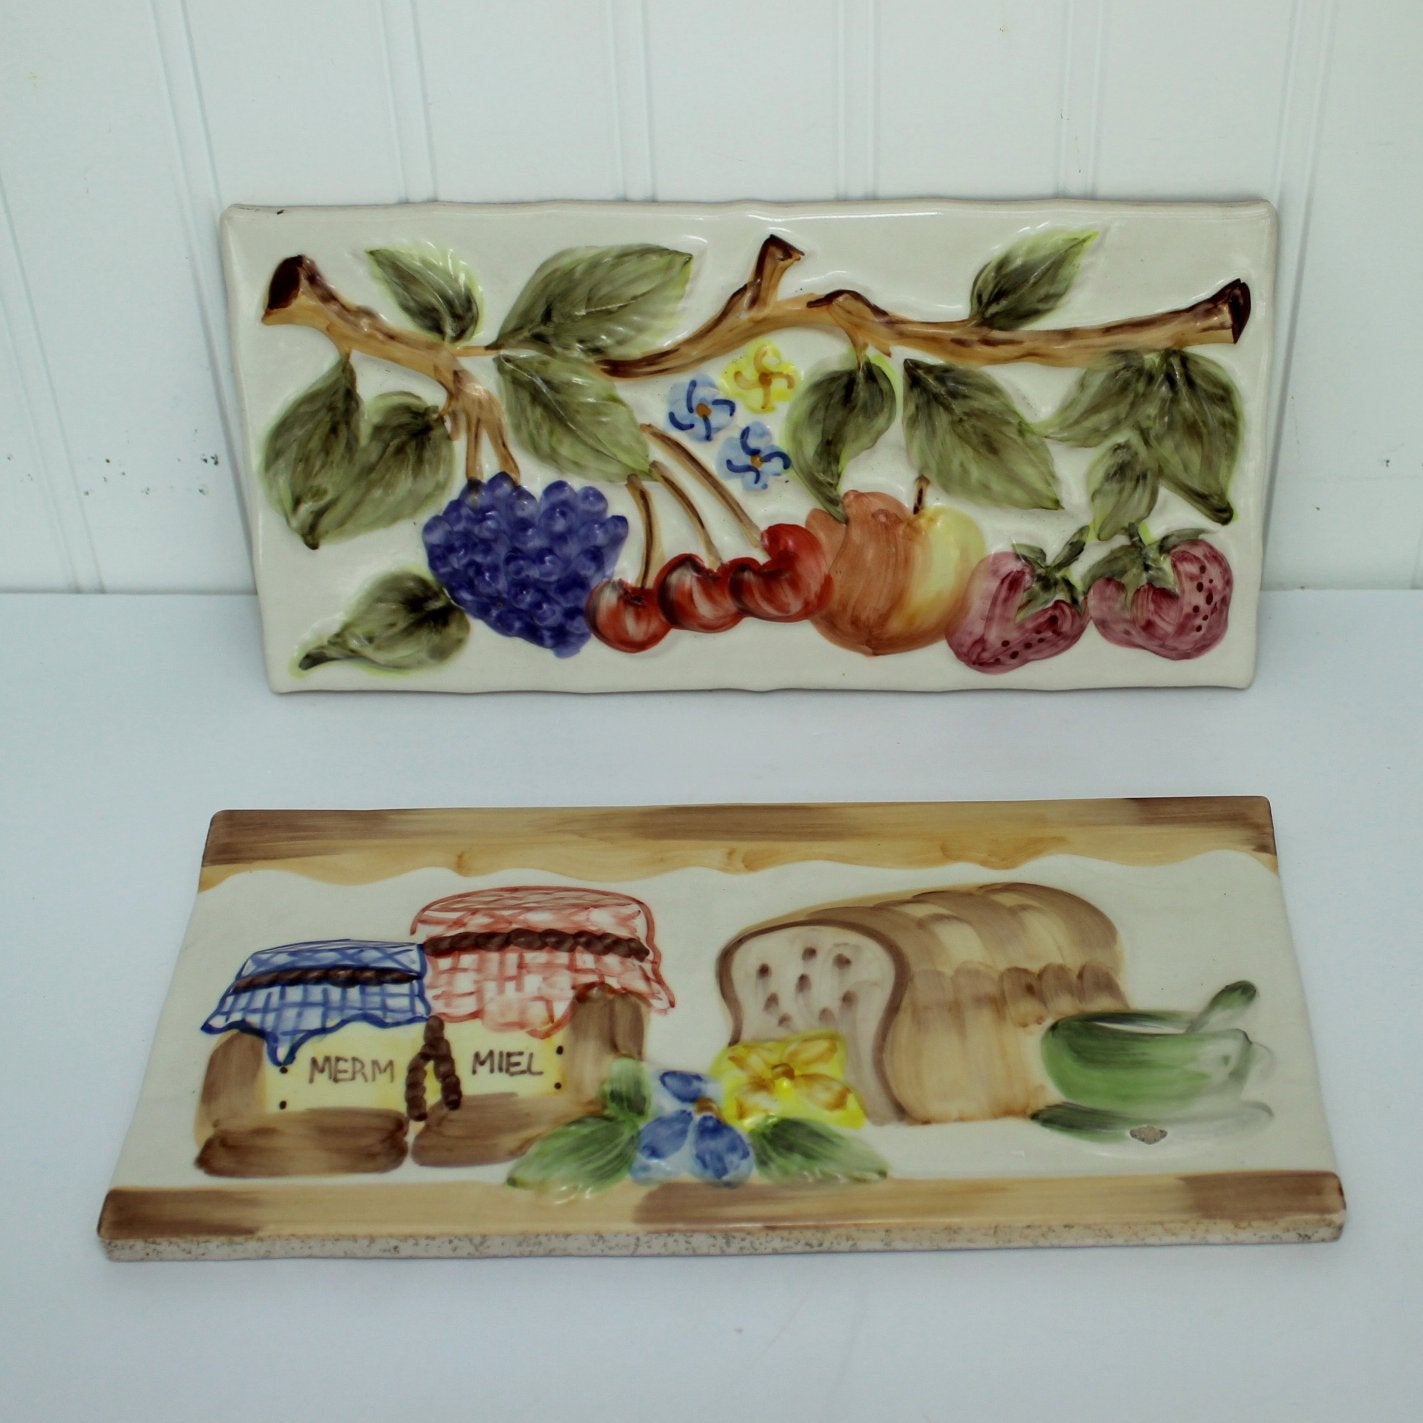 Pair Decorative Tiles DIY Project Kitchen Decor Fruit Bread Miel